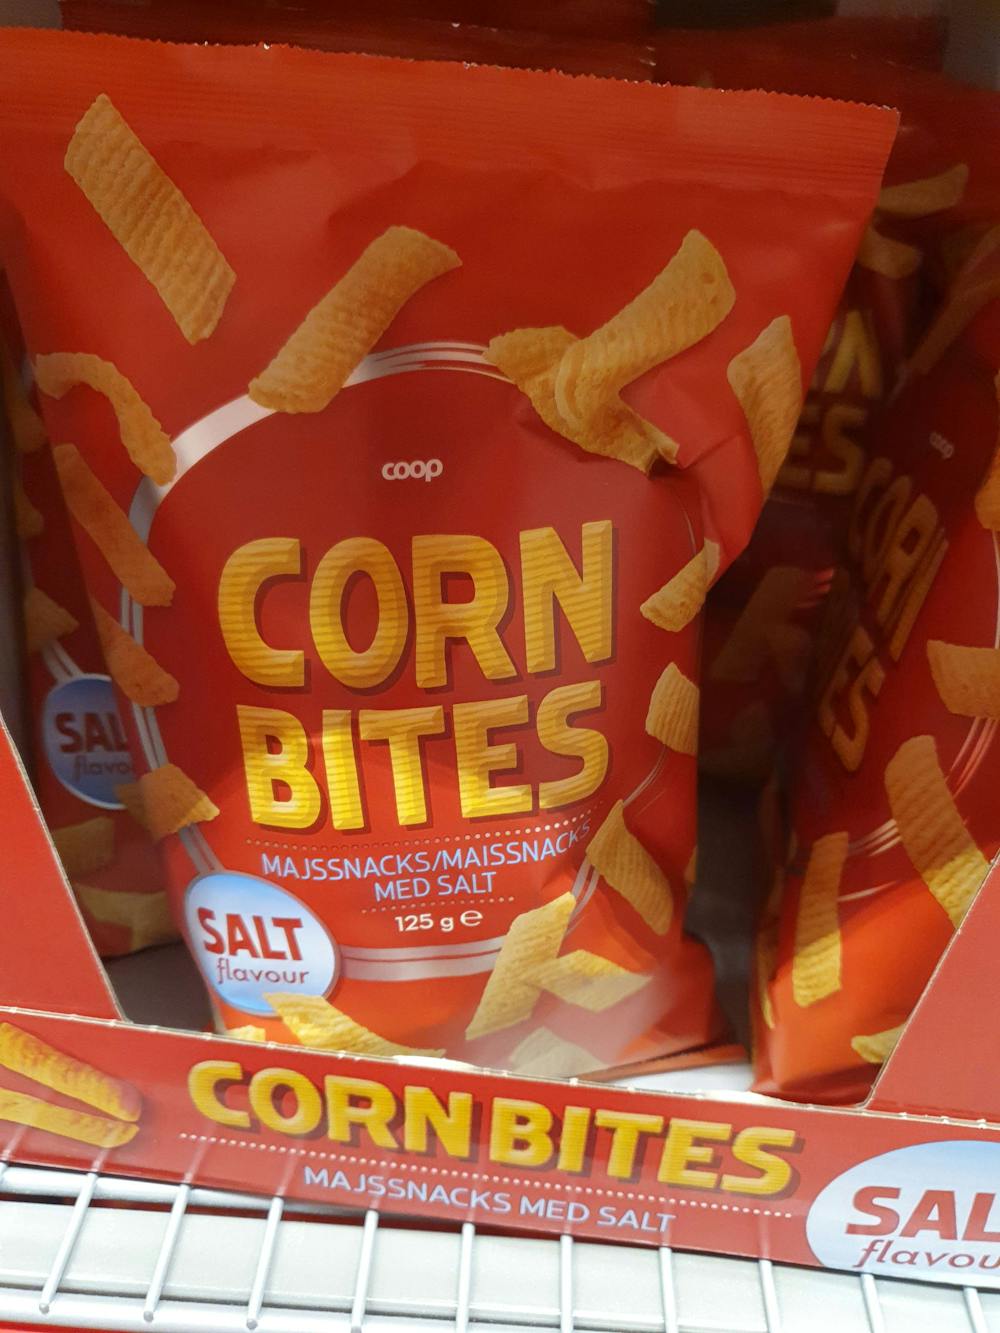 Corn bites, med salt, Coop